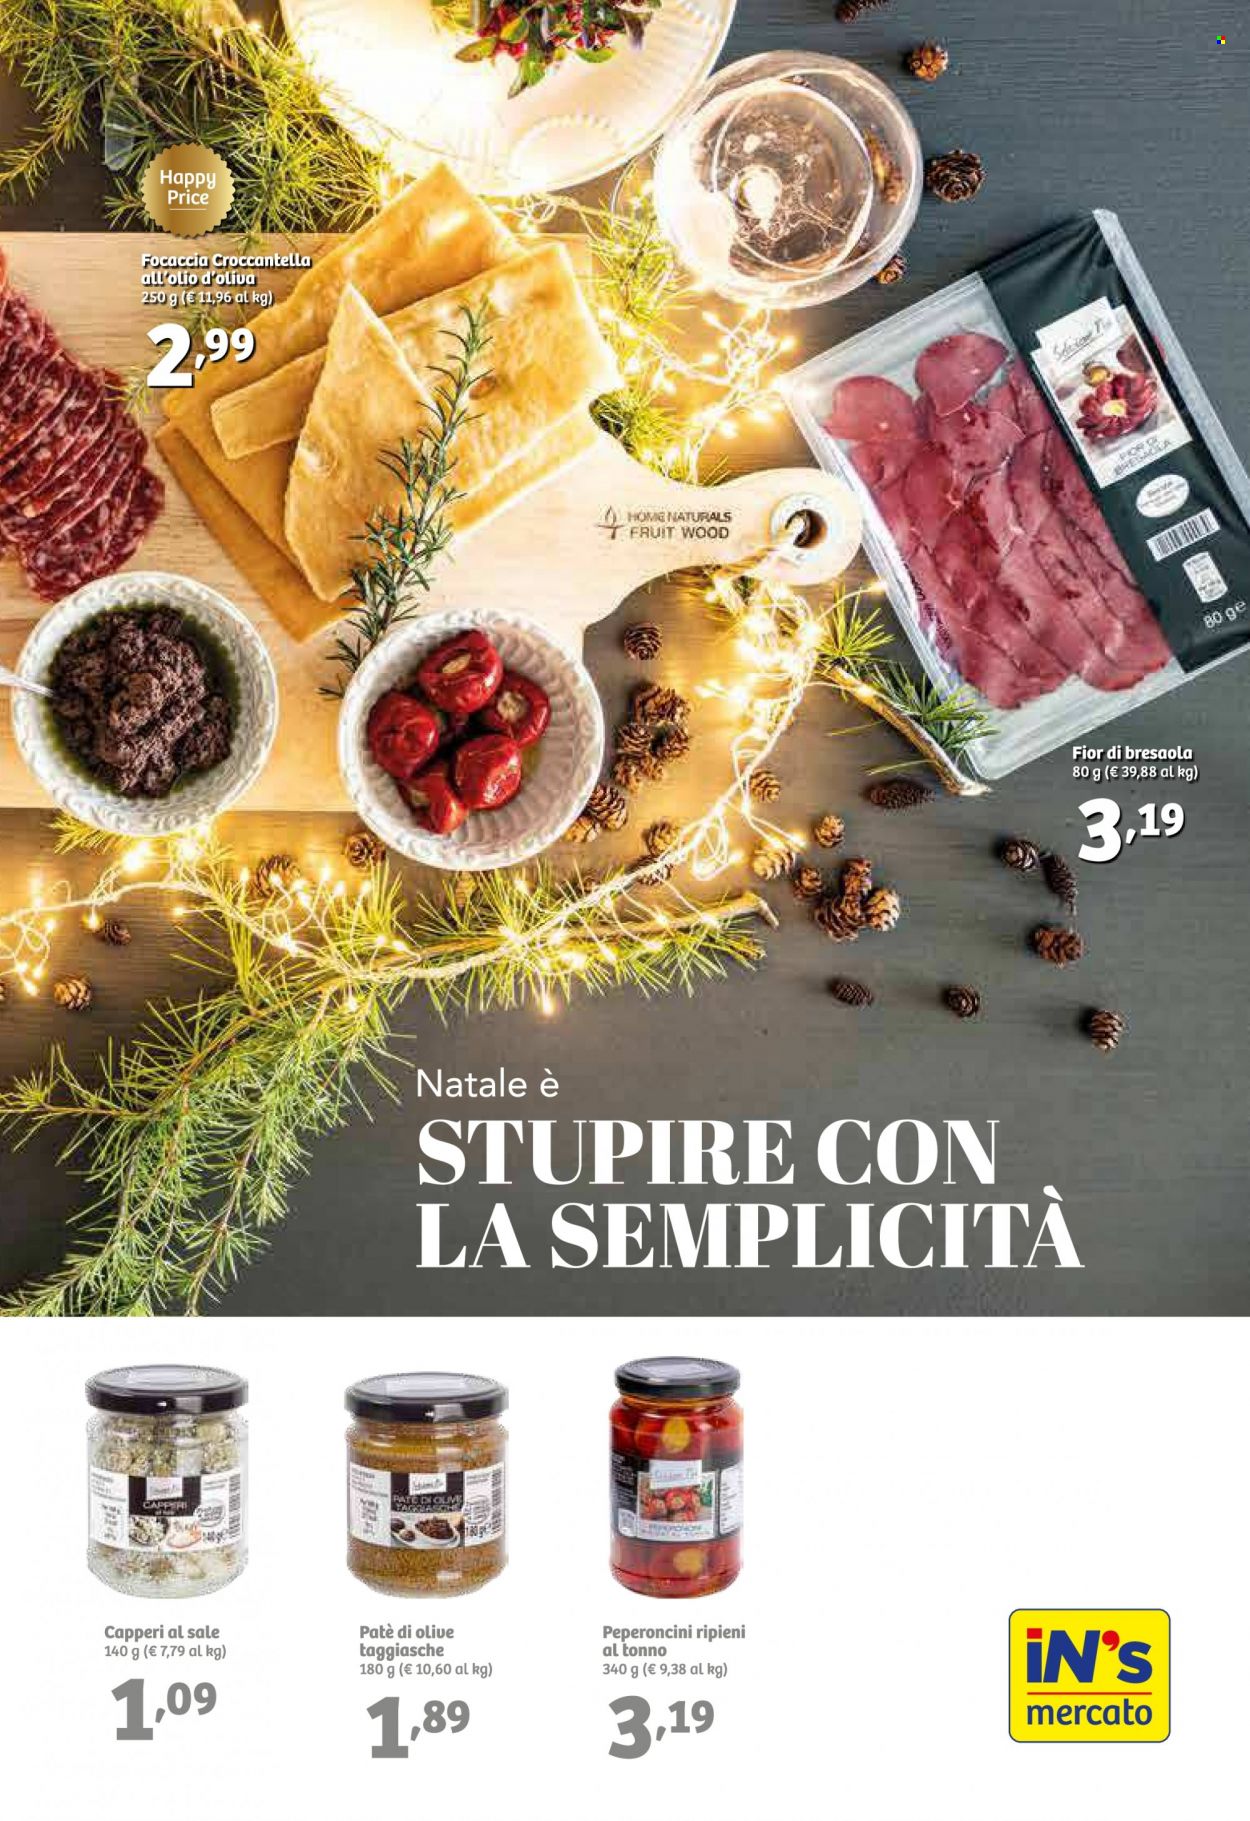 thumbnail - Volantino iN's Mercato - 7/12/2022 - 18/12/2022 - Prodotti in offerta - focaccia, bresaola, capperi, paté di olive, peperoncini ripieni. Pagina 13.